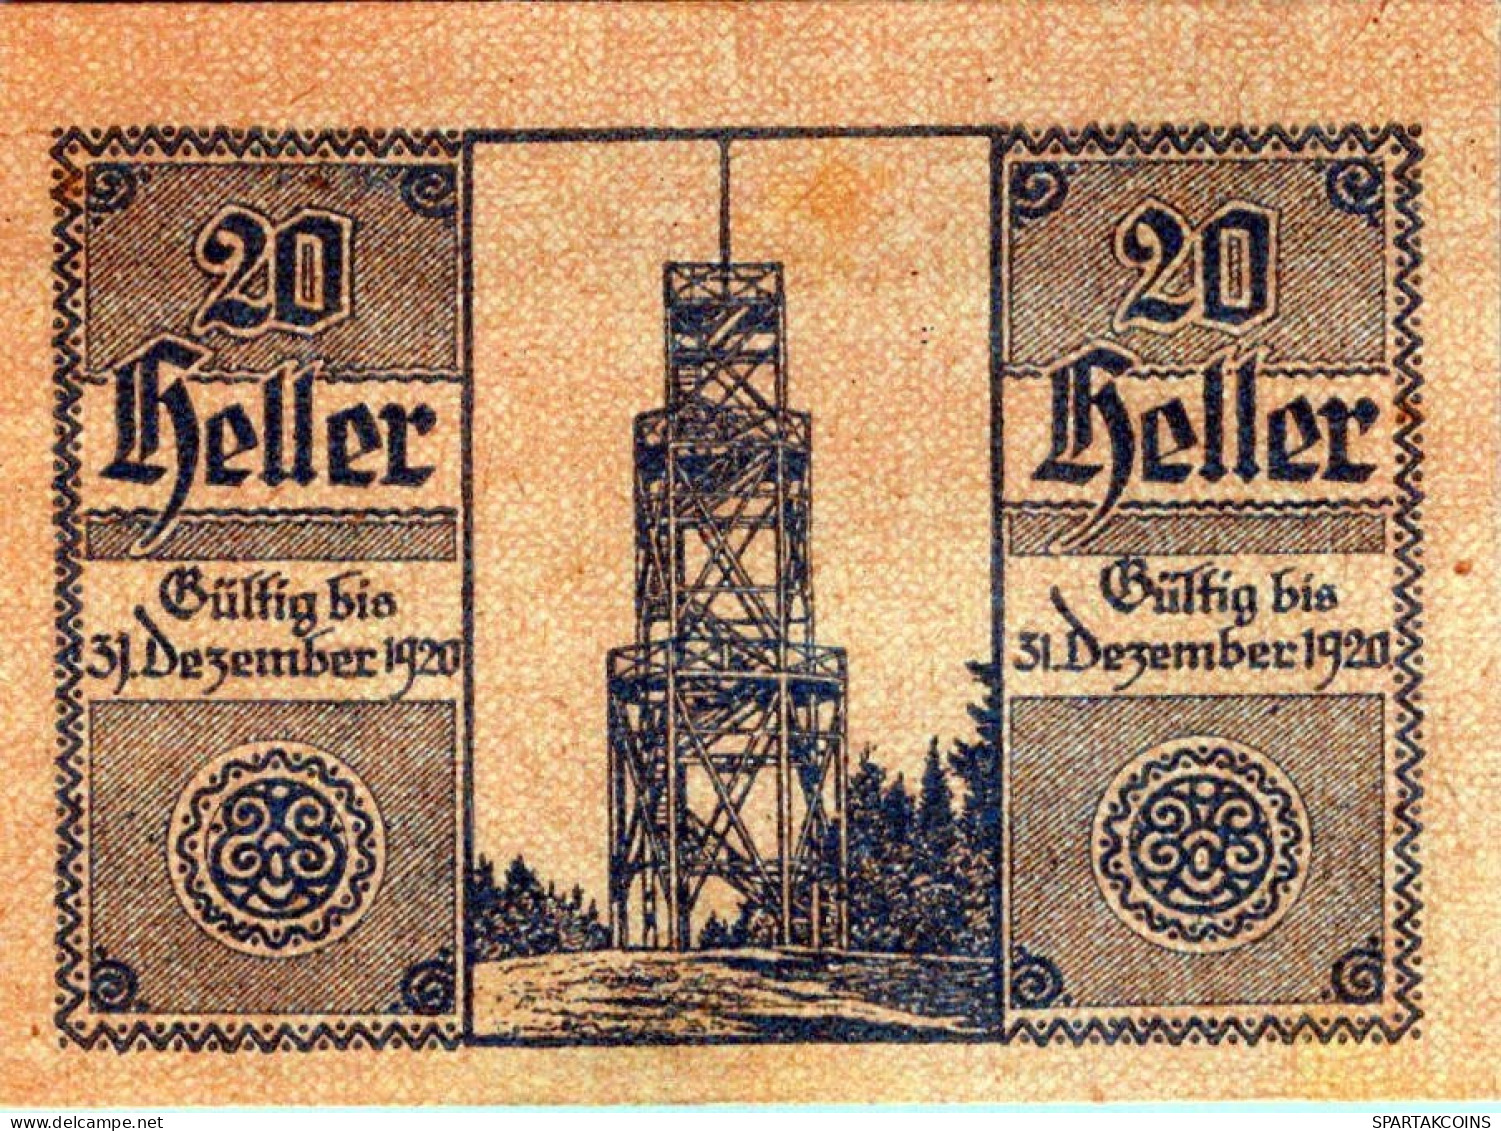 20 HELLER 1920 Stadt SANKT ULRICH Oberösterreich Österreich Notgeld #PE882 - [11] Emissions Locales